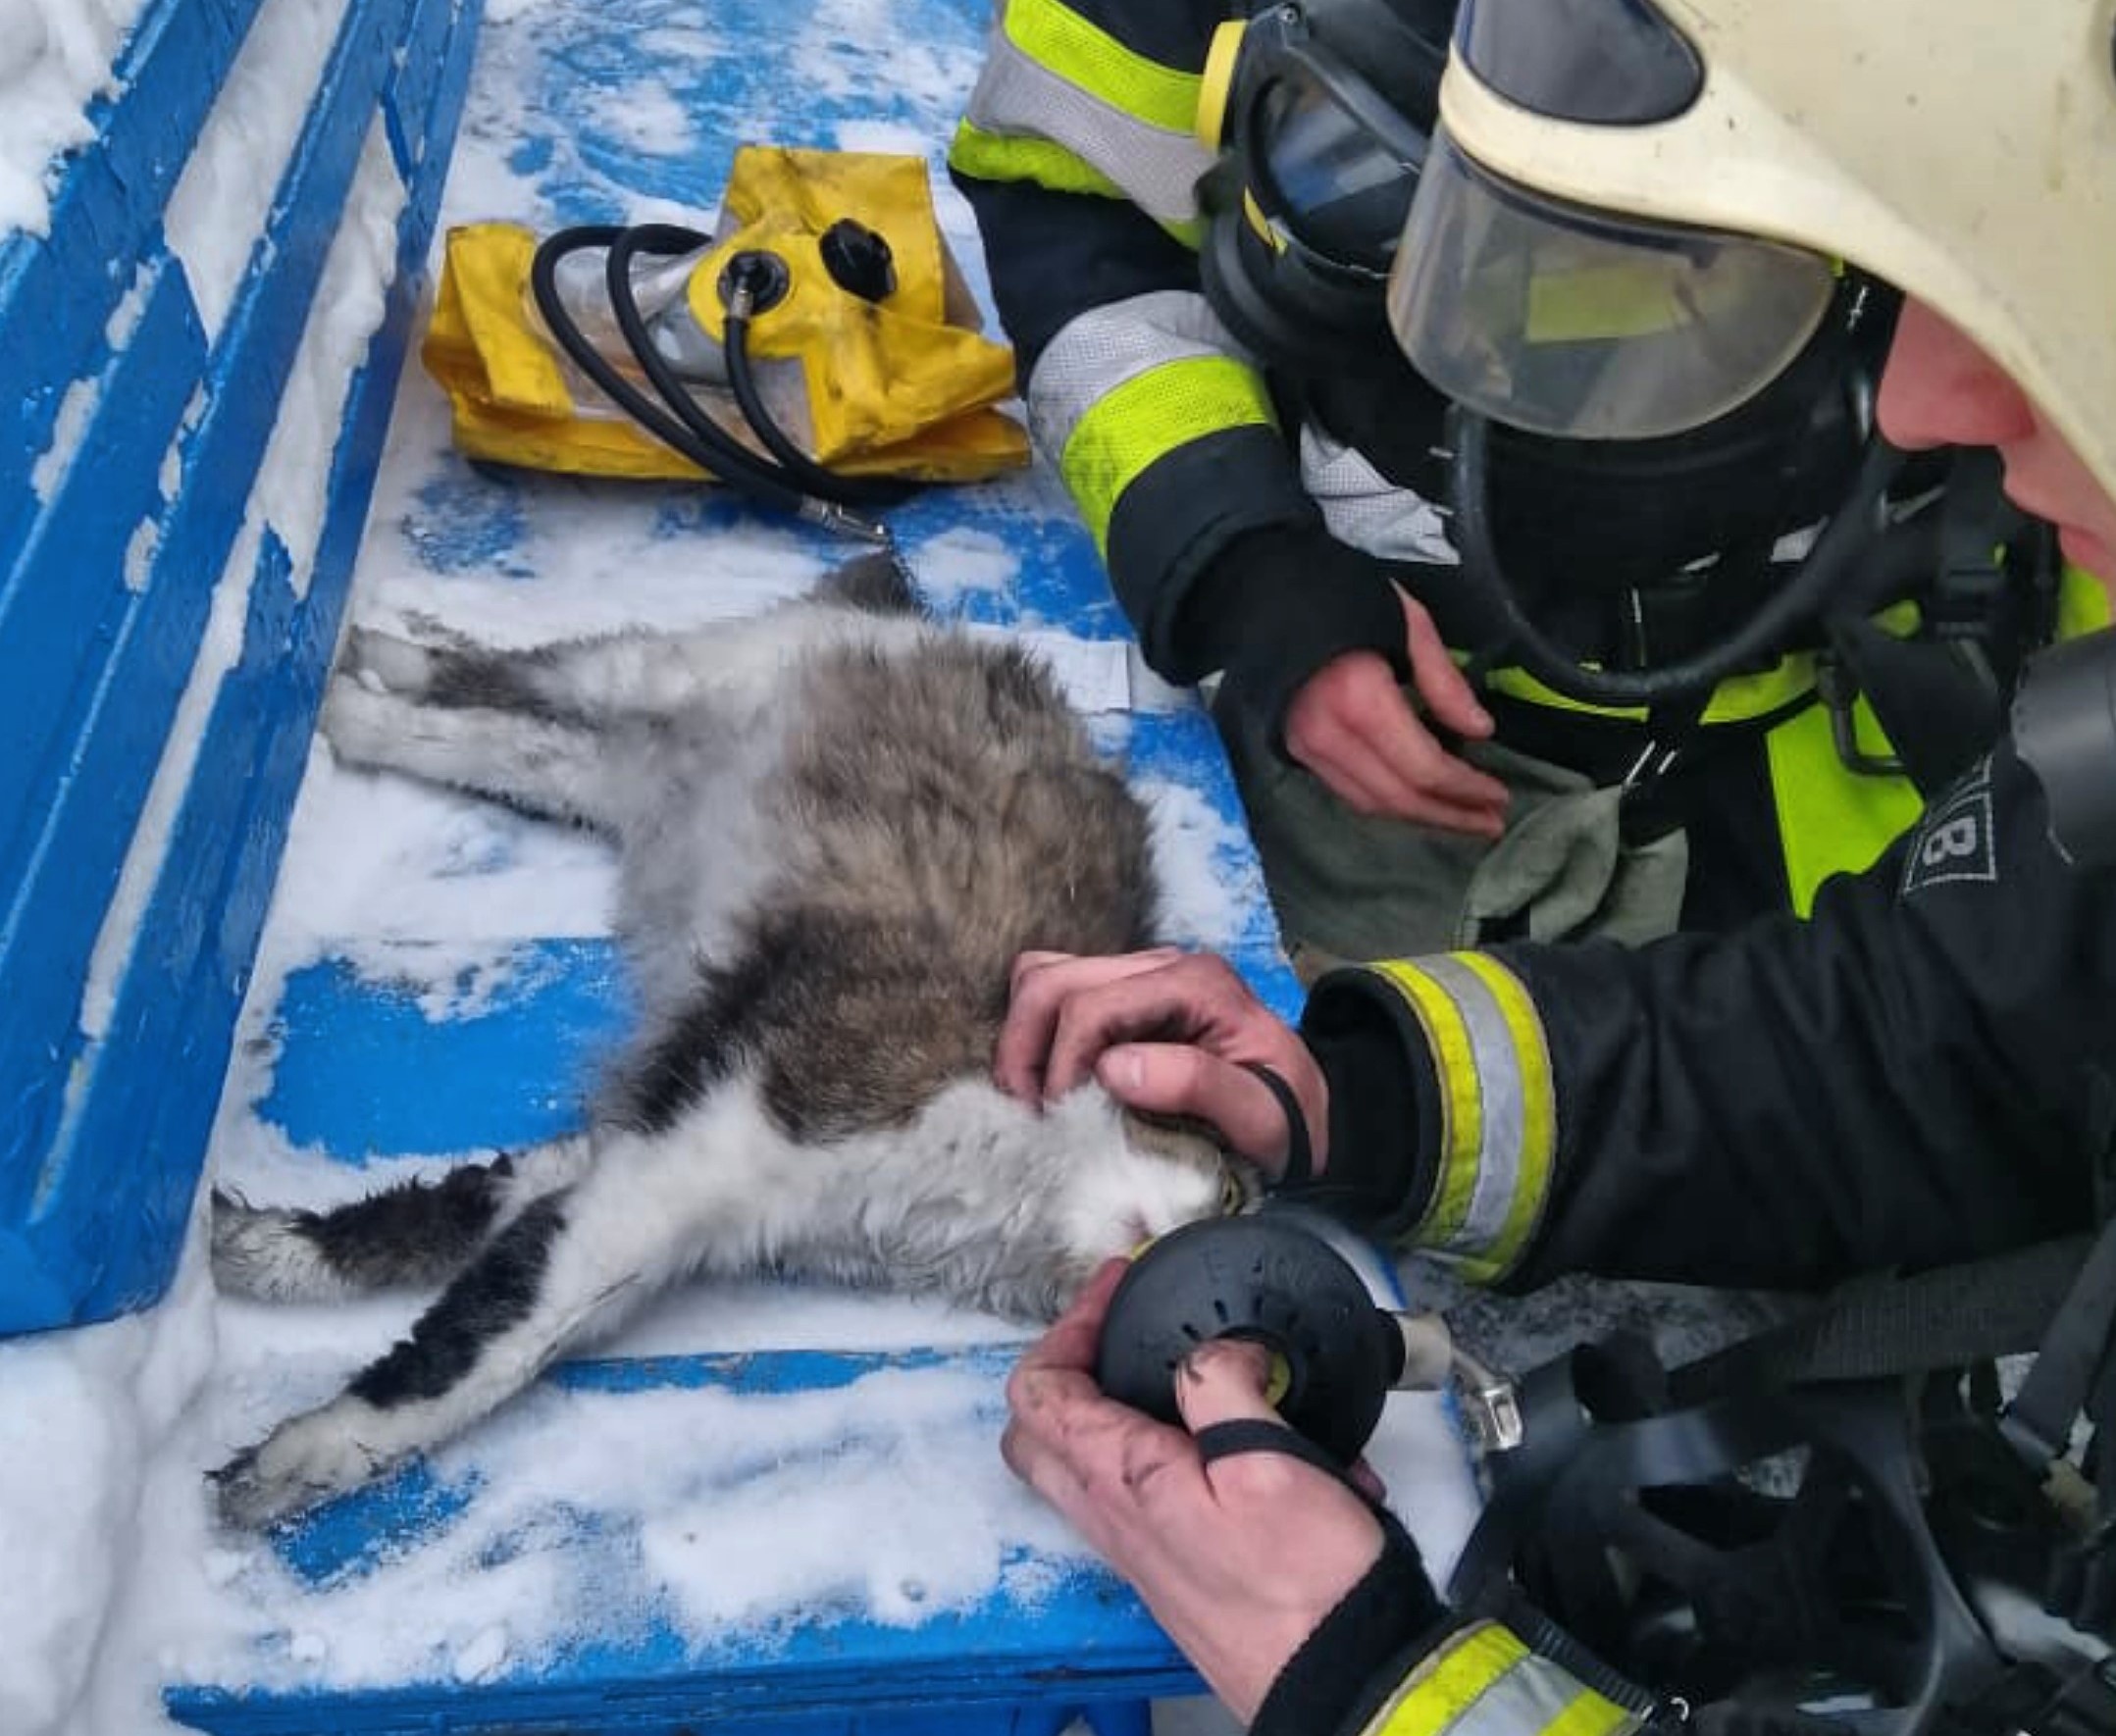 Кемеровские спасатели вытащили из пожара кошку и реанимировали ее. Посмотрите это милое фото